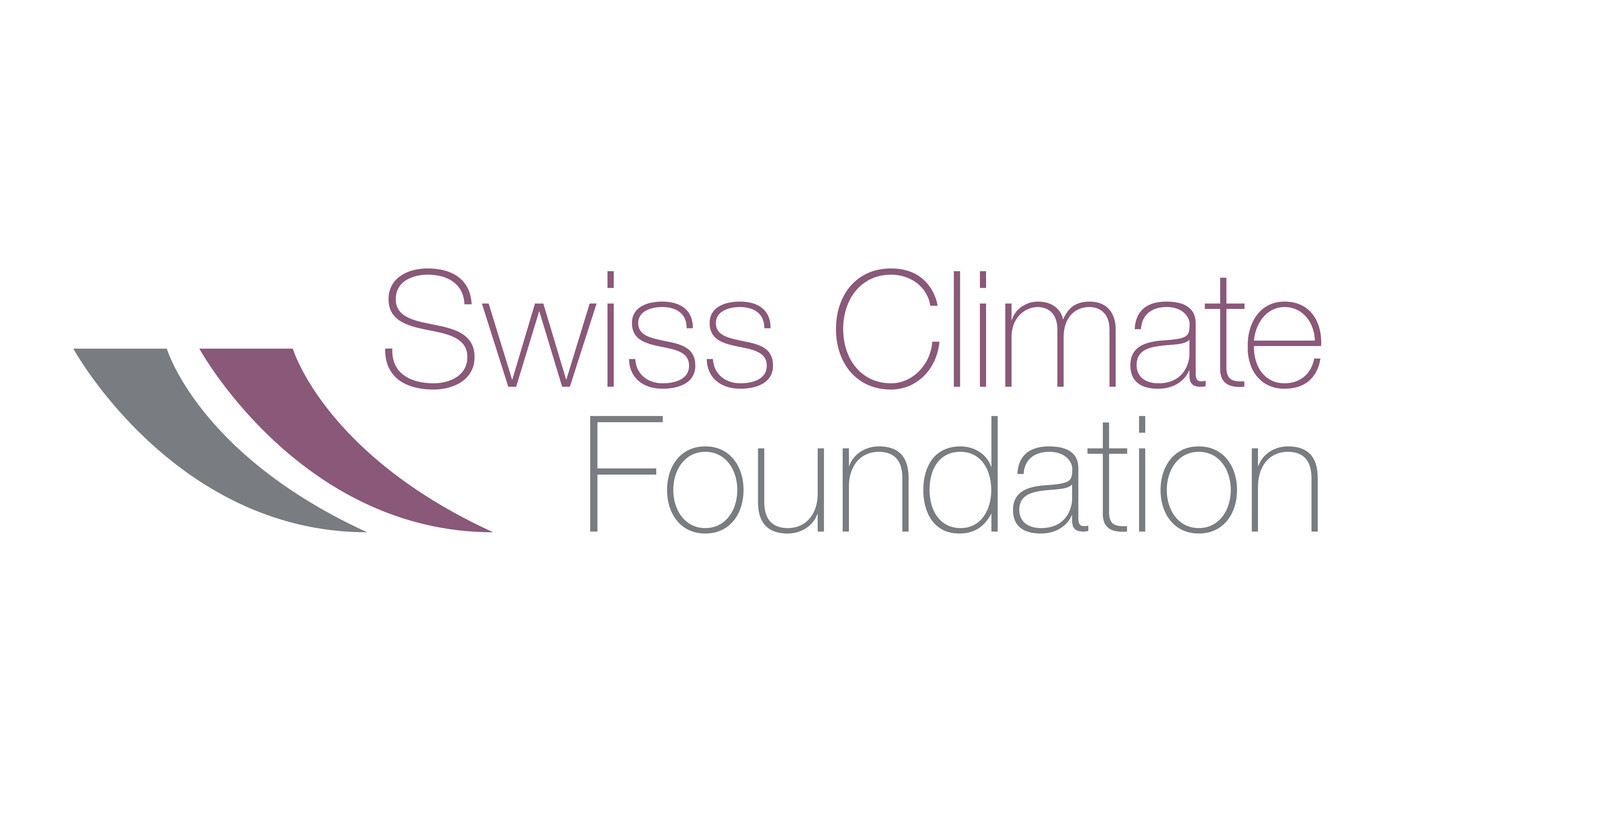 Partenaire - Swiss Climate Foundation